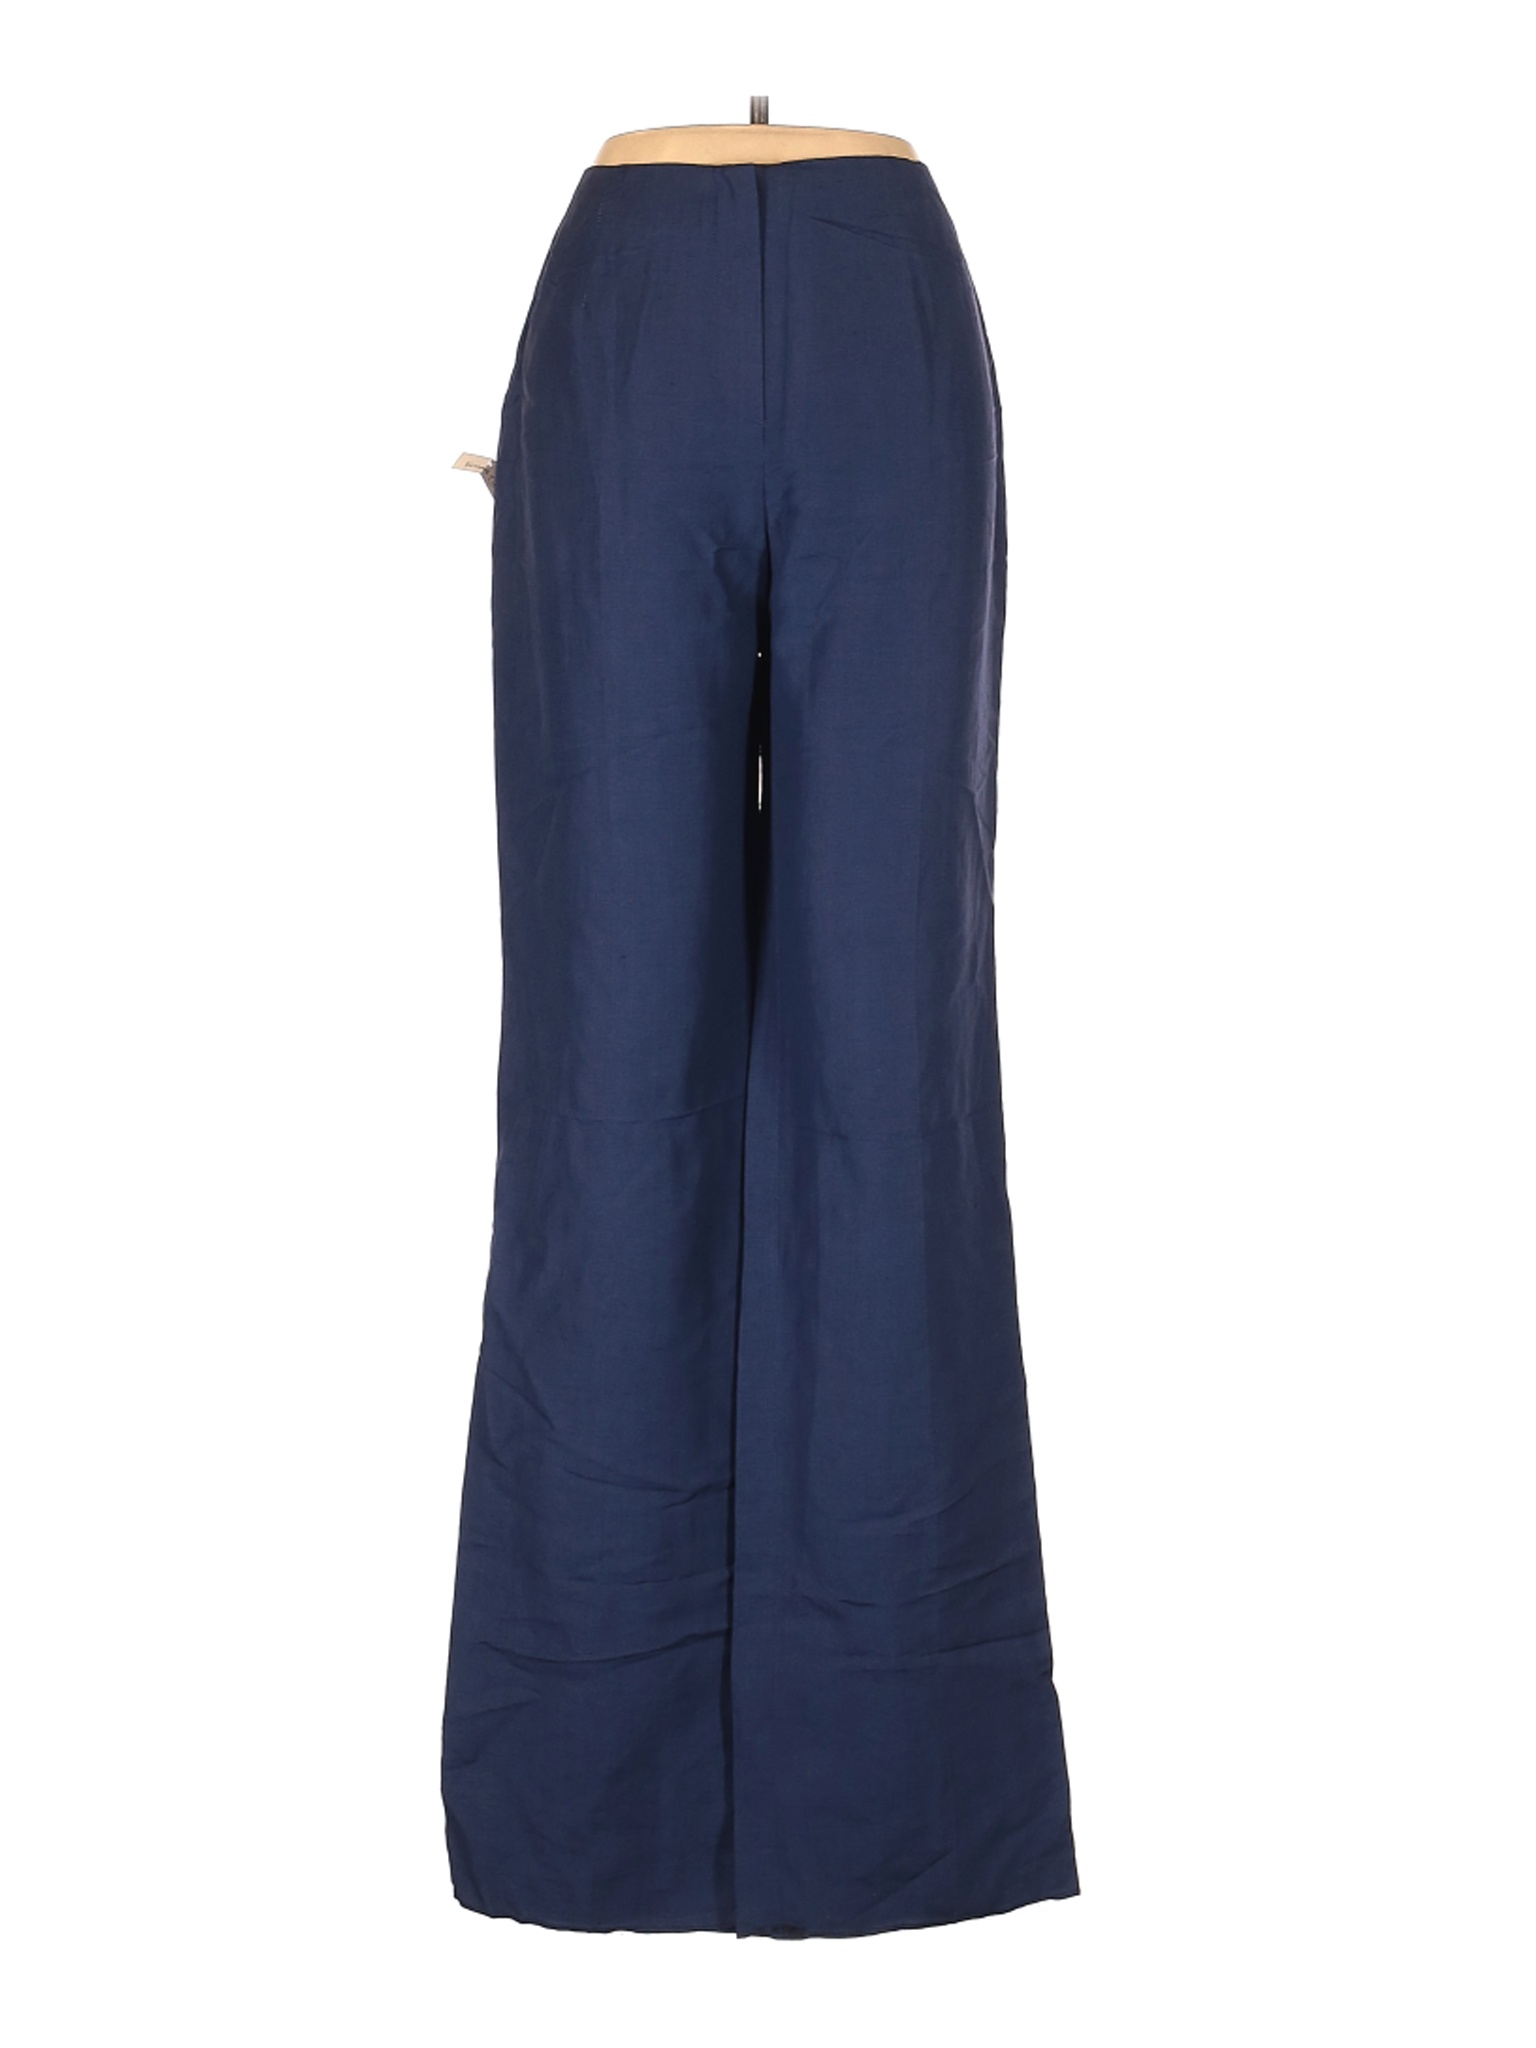 NWT Bernard Zins Women Blue Linen Pants 8 | eBay